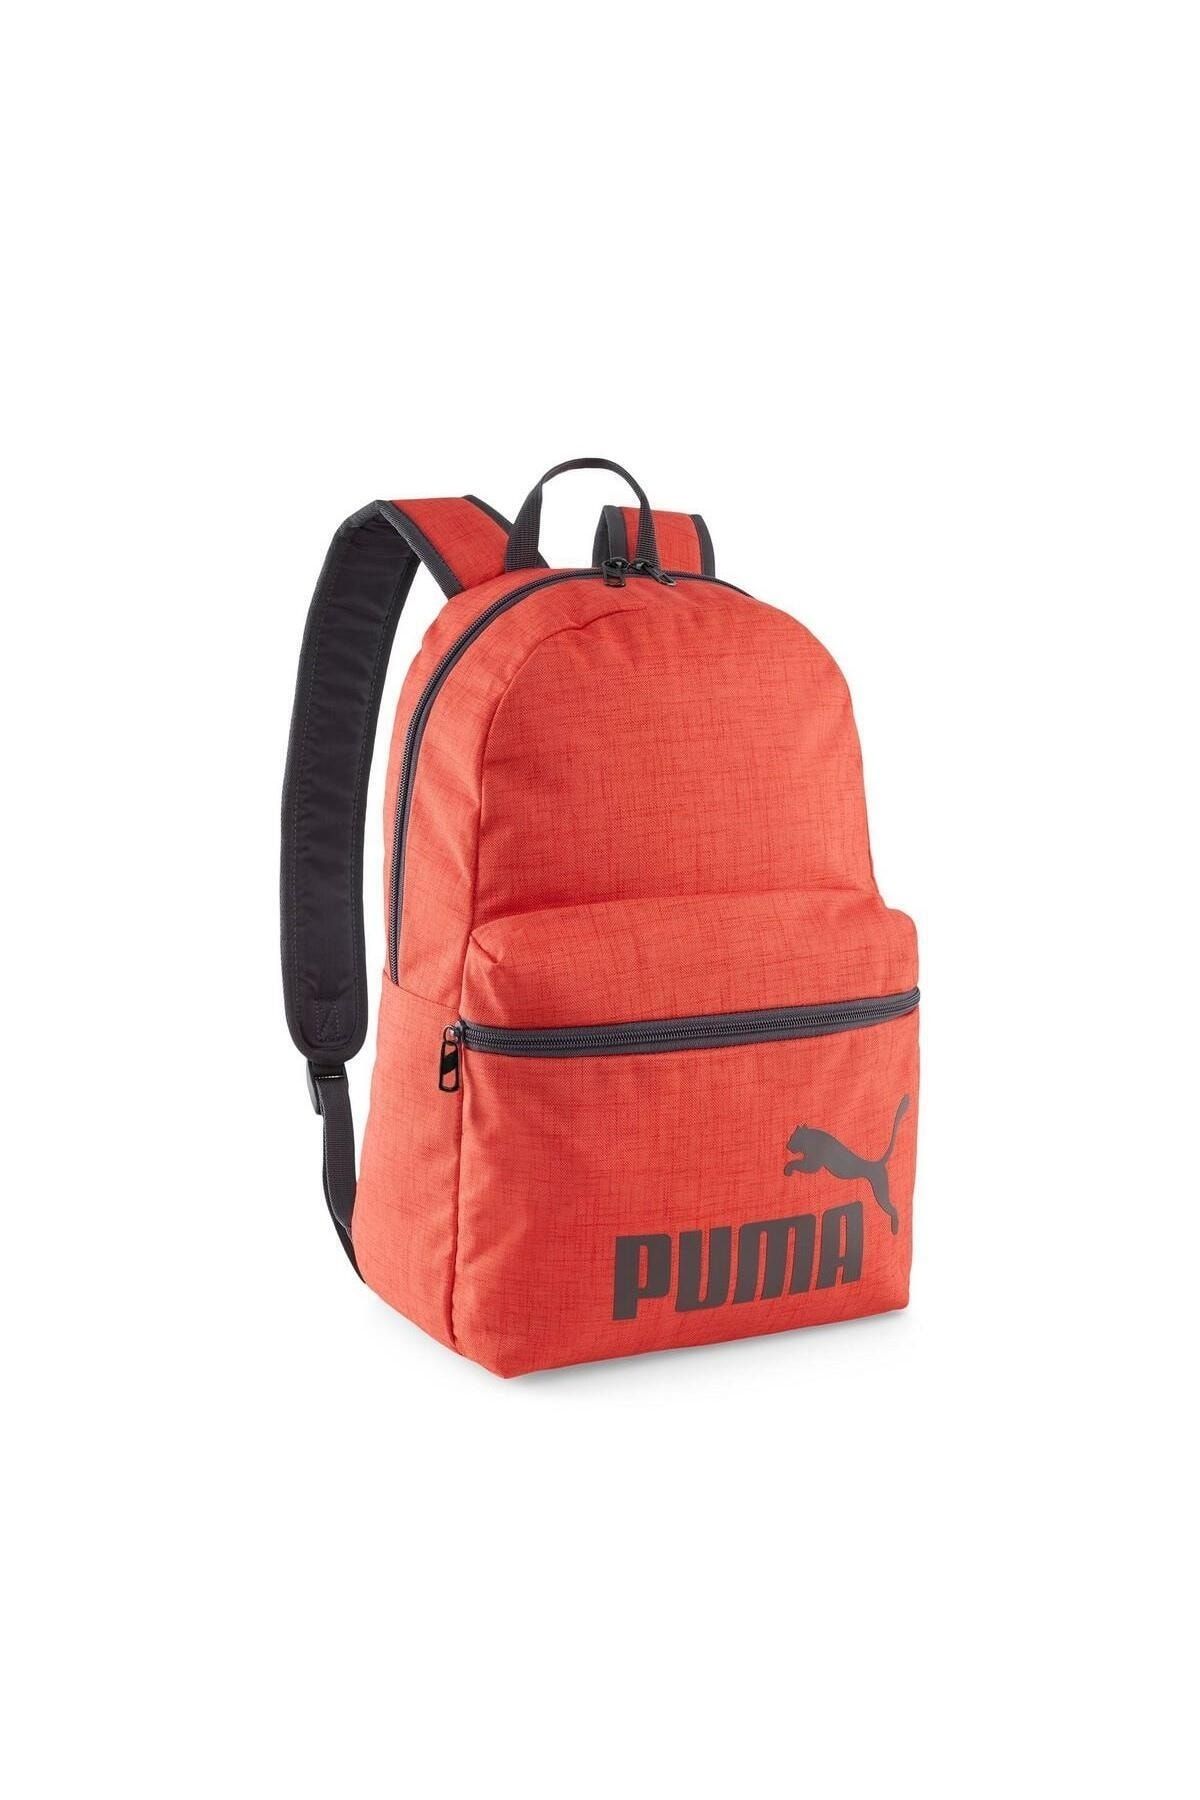 Puma 09011802 Phase Backpack III Unisex Sırt Çantası